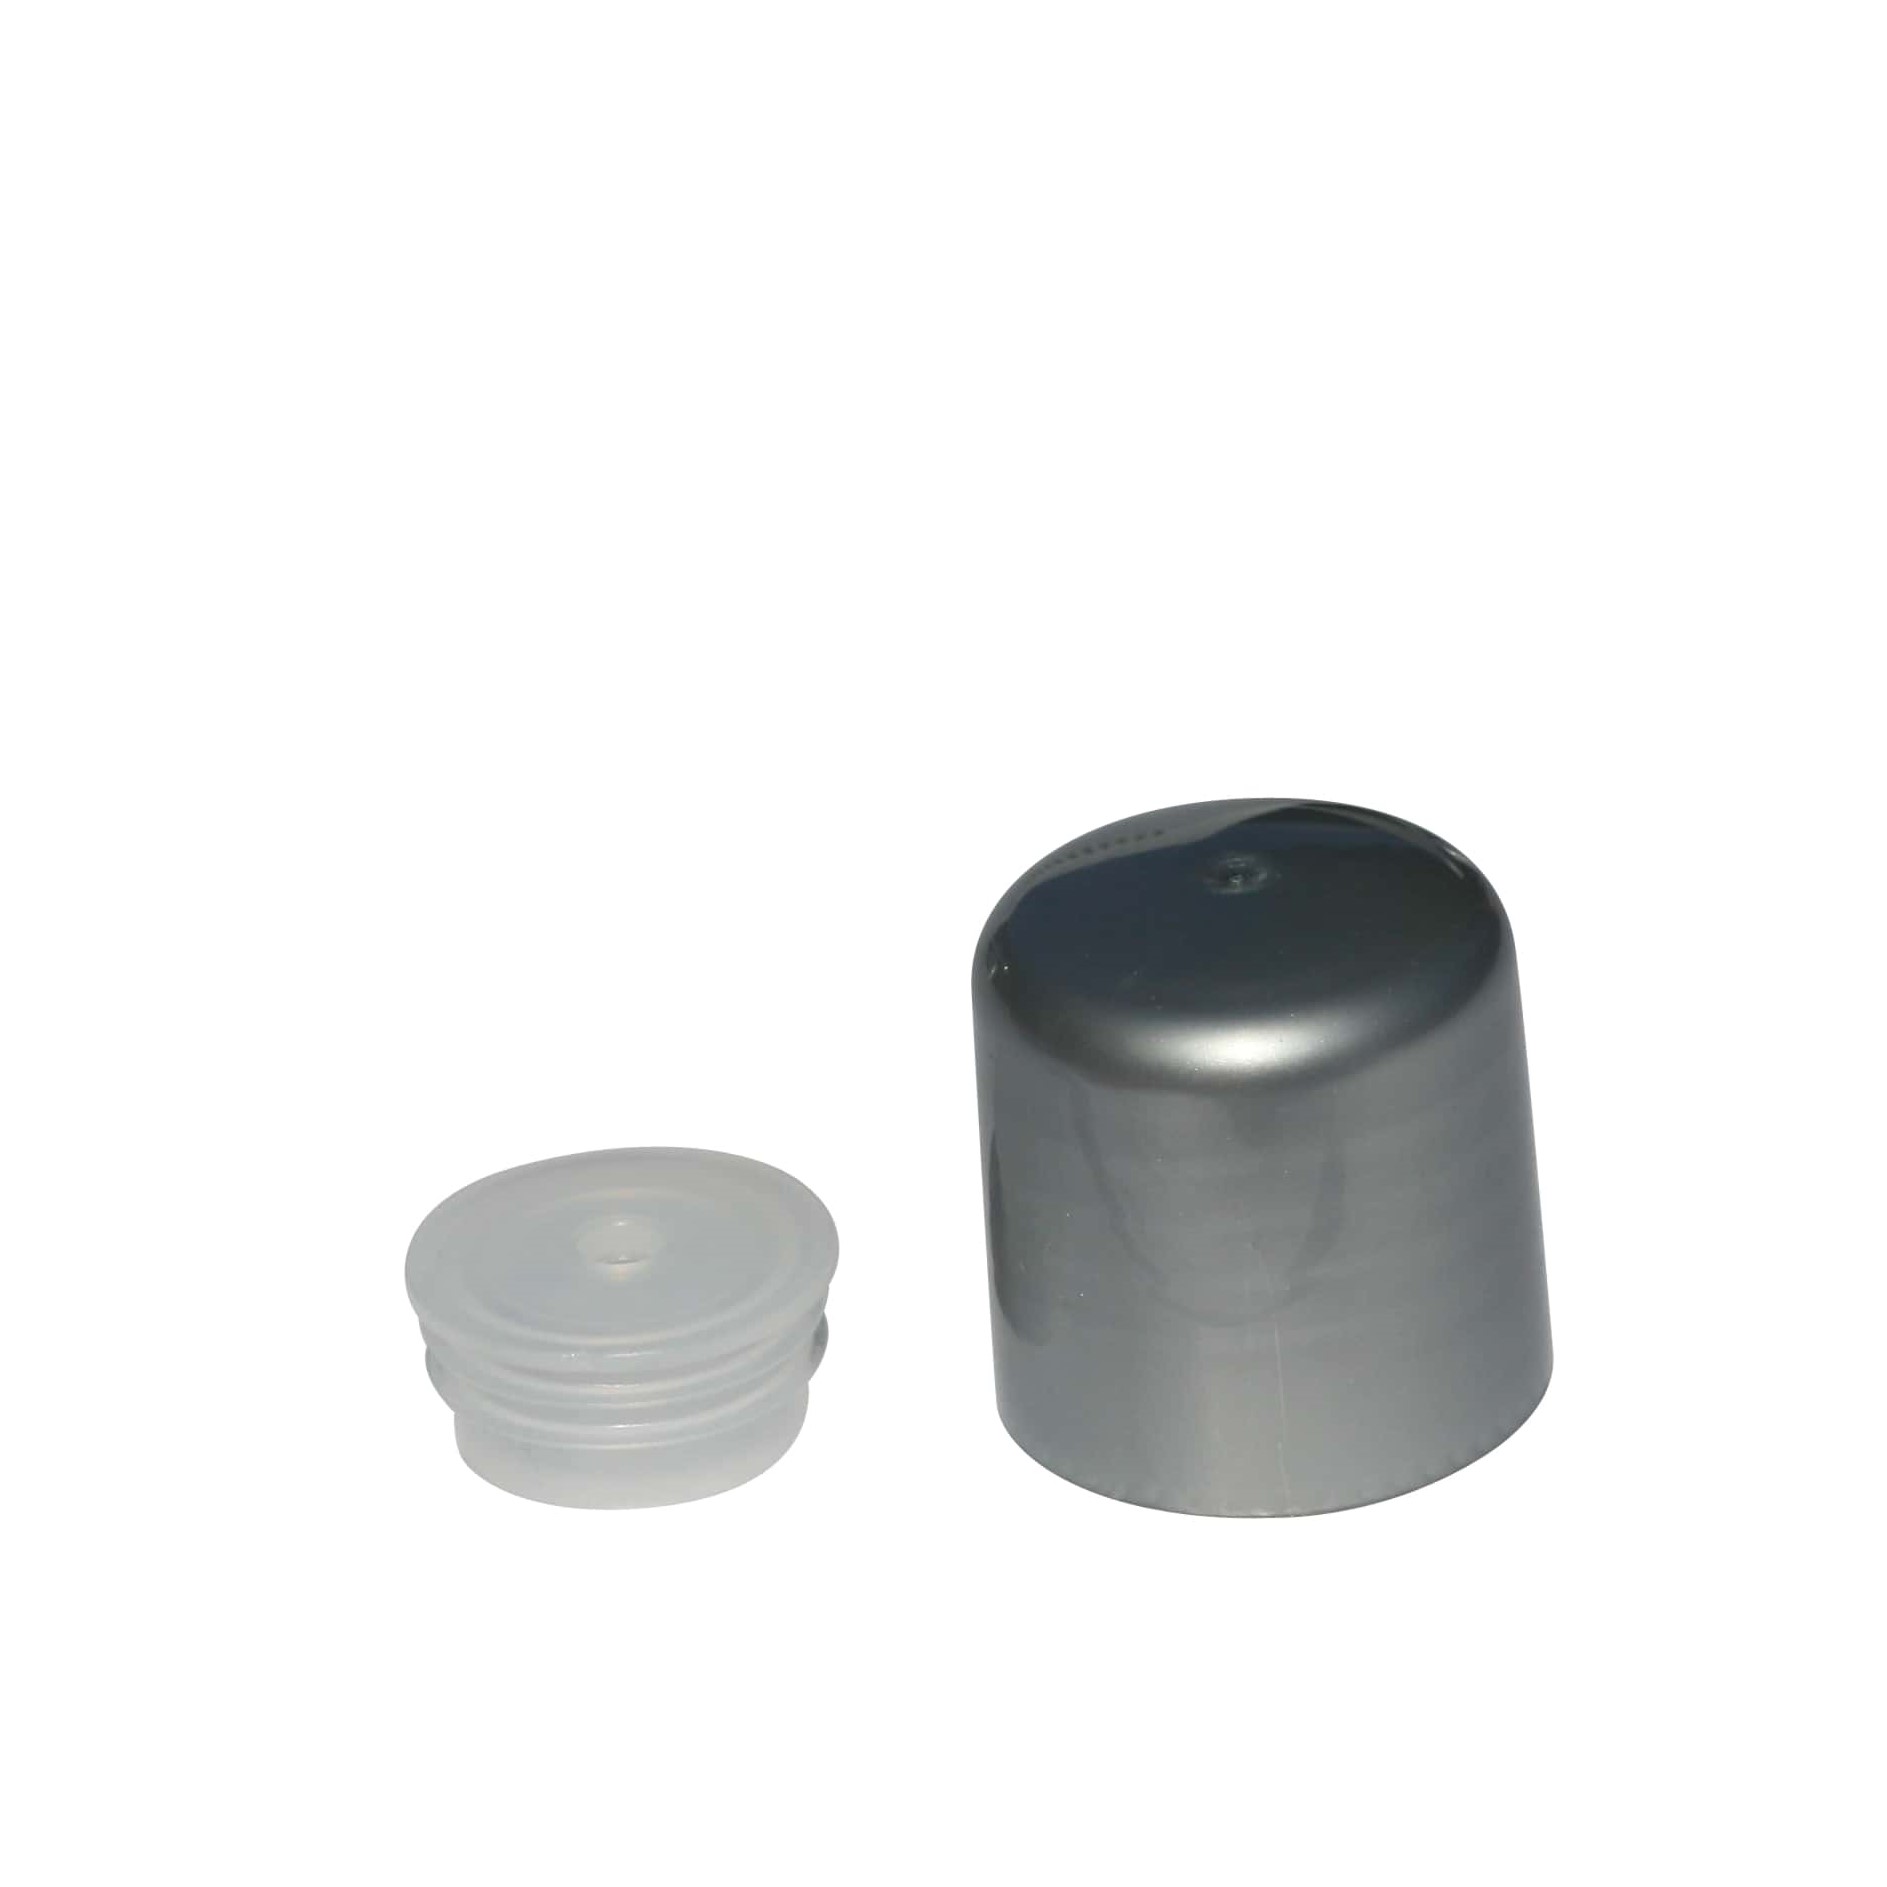 Schraubverschluss mit Spritzeinsatz, PP-Kunststoff, silber, für Mündung: GPI 24/410